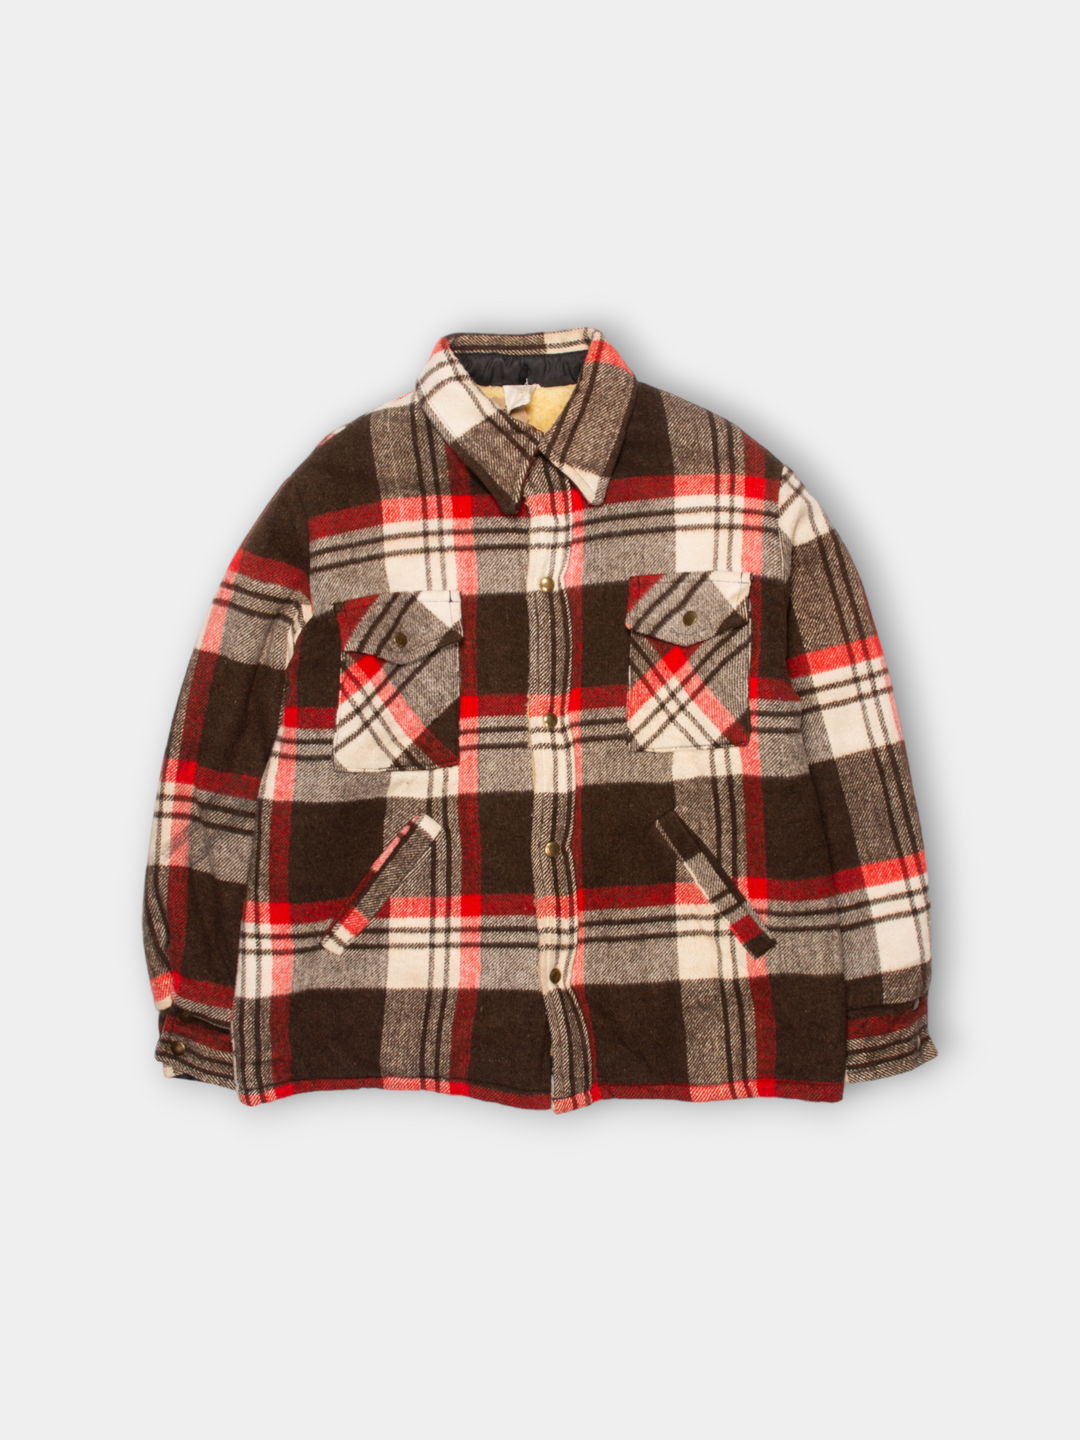 70s Heavy Flannel Wool Shirt Jacket (M)